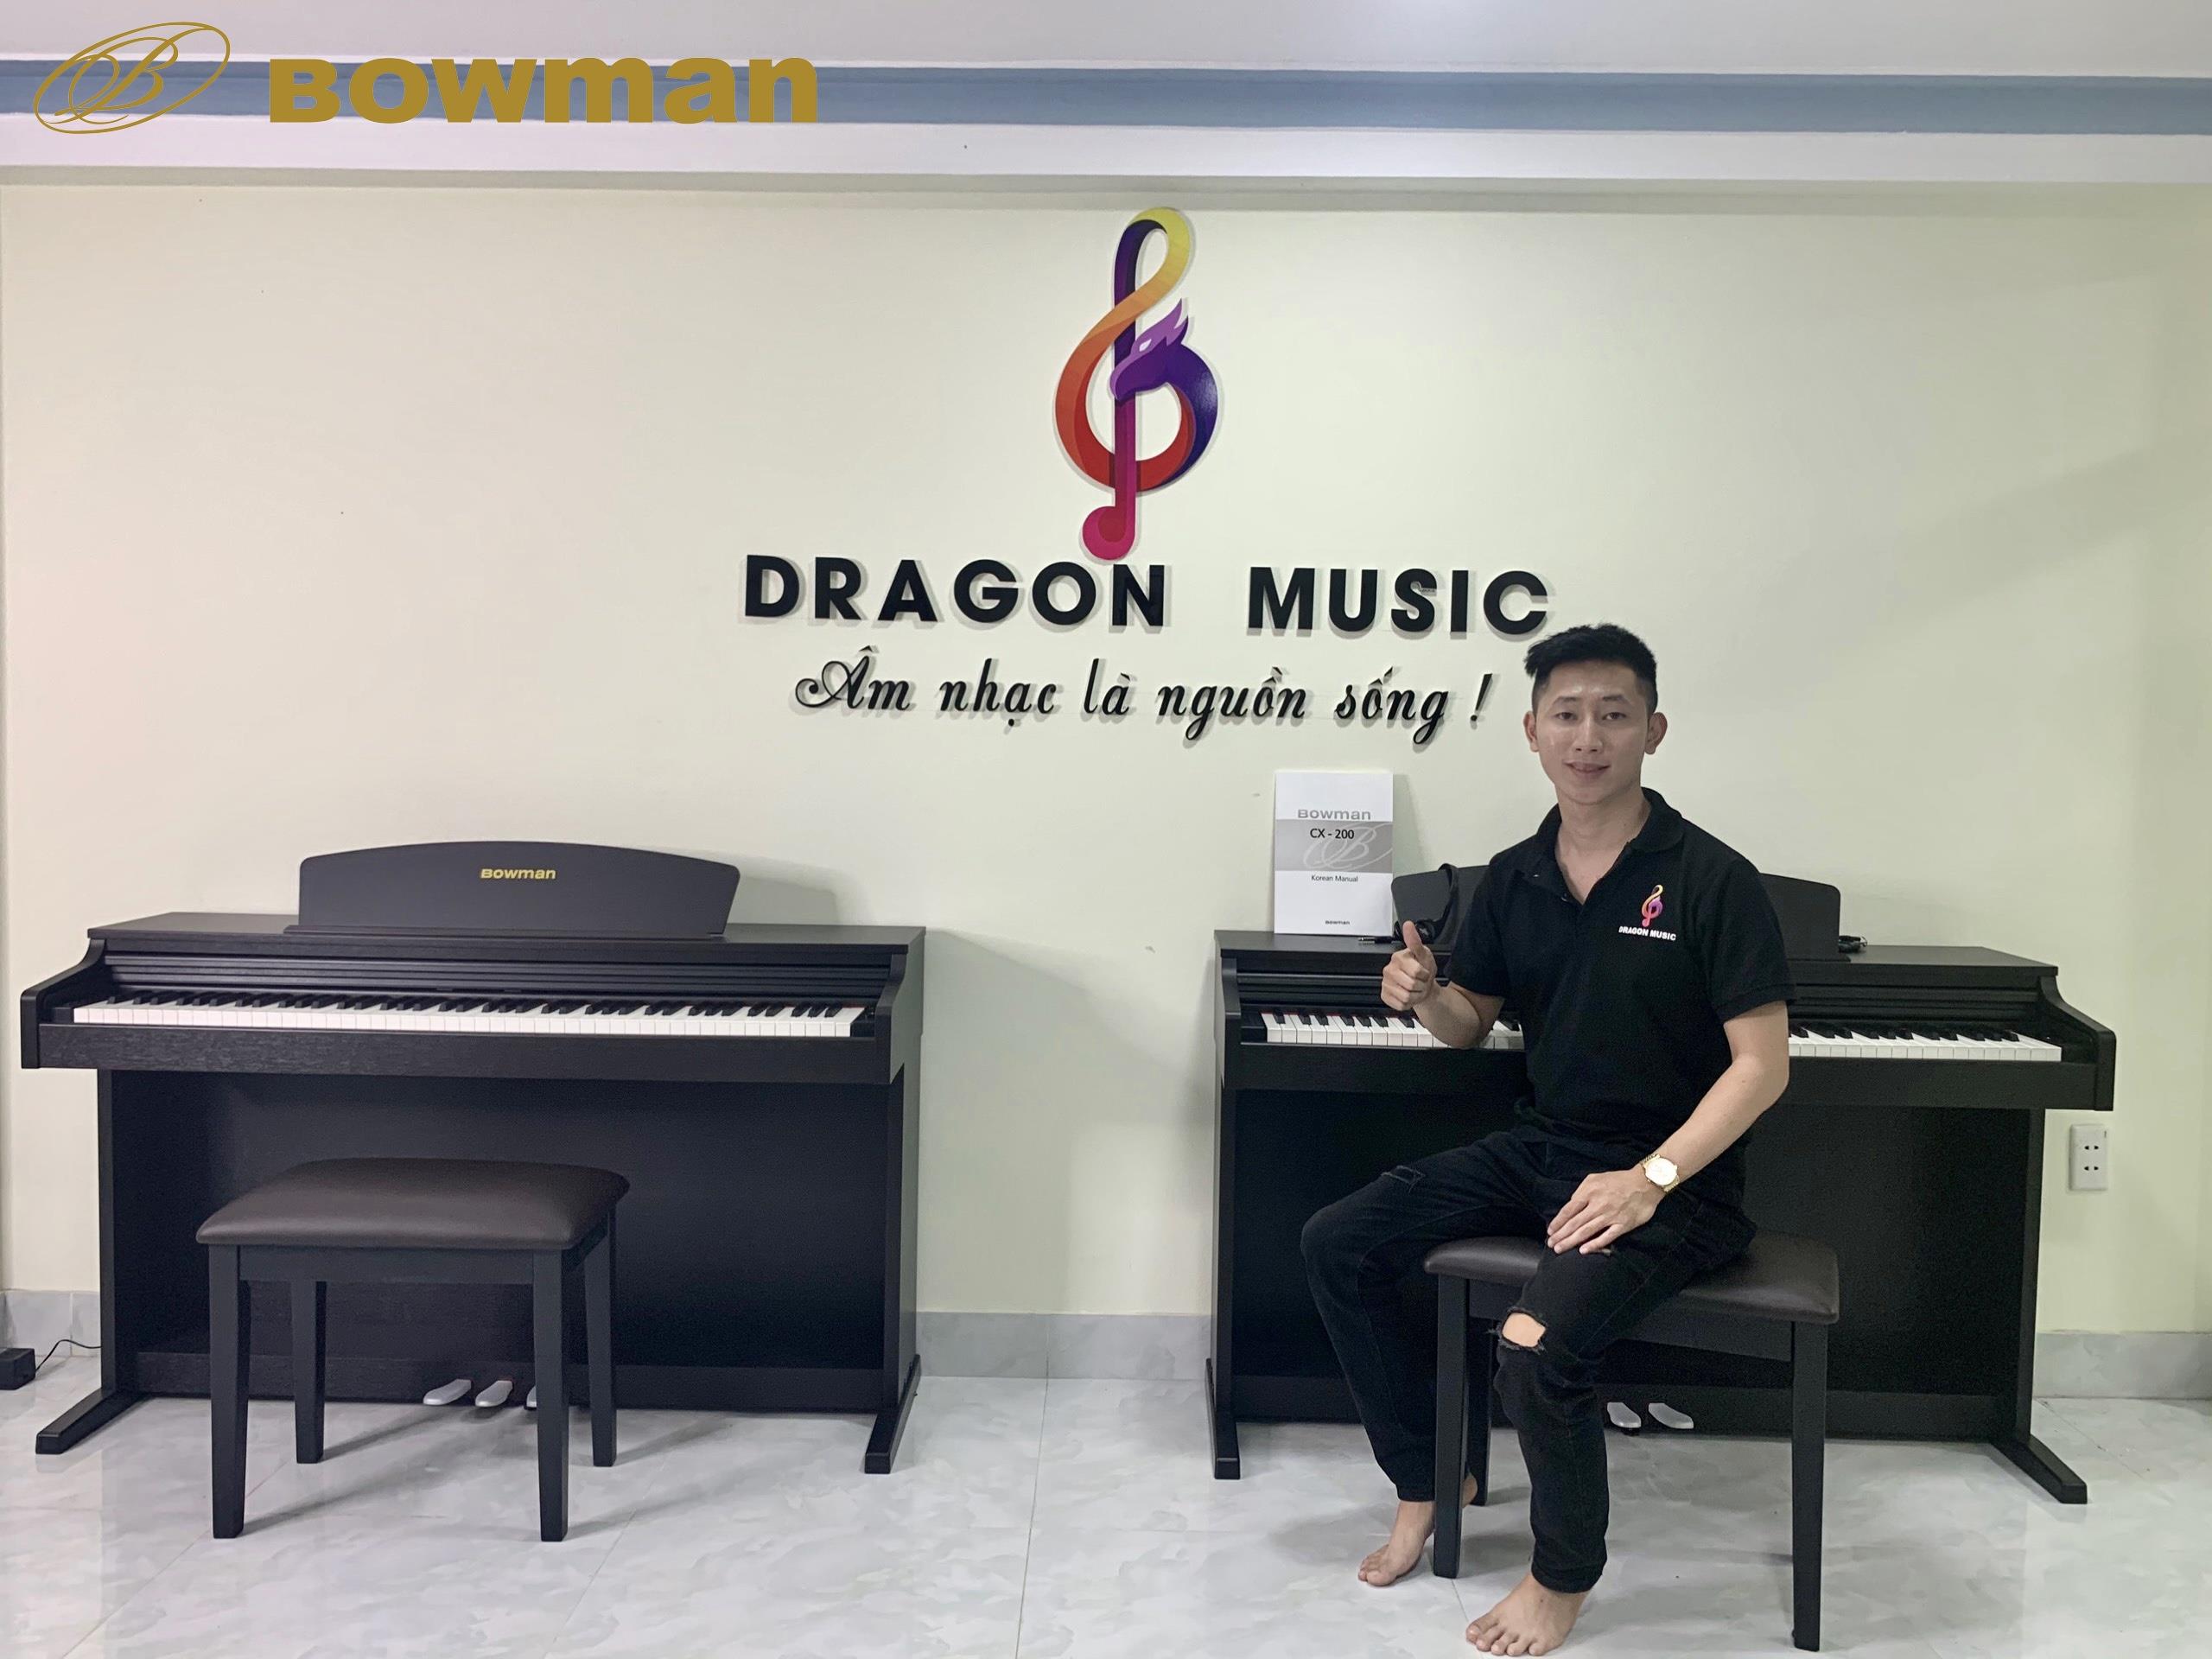 [ 6 ĐIỀU CẦN LƯU Ý KHI MỞ TRUNG TÂM DẠY NHẠC ] - Bowman PIANO Việt Nam - BowmanPIANO.com.vn